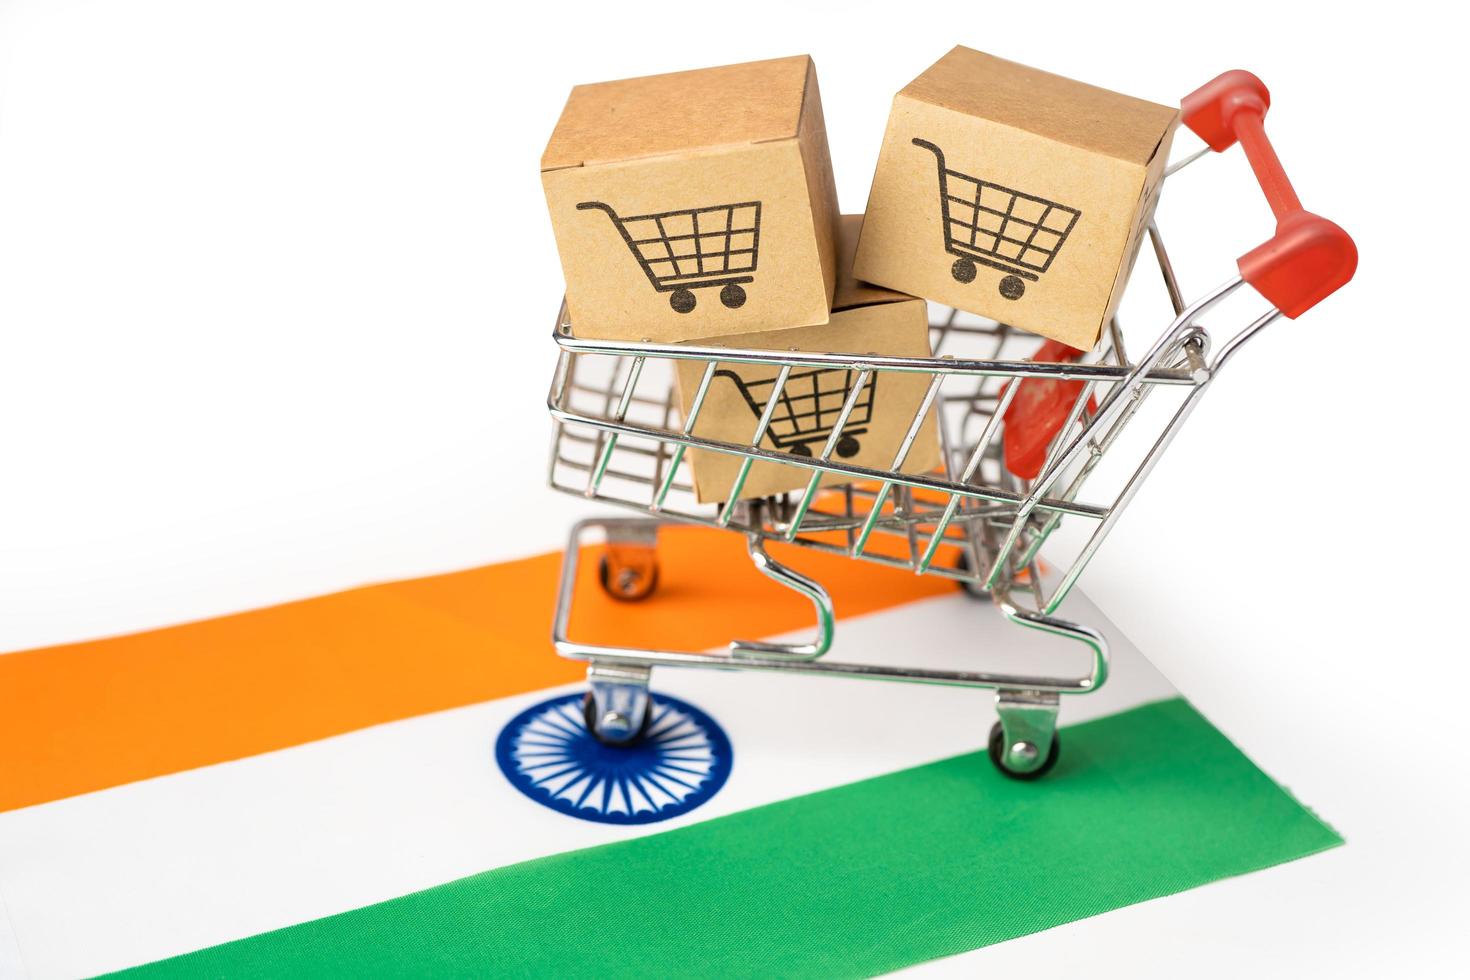 Box with shopping cart logo and India flag, I photo